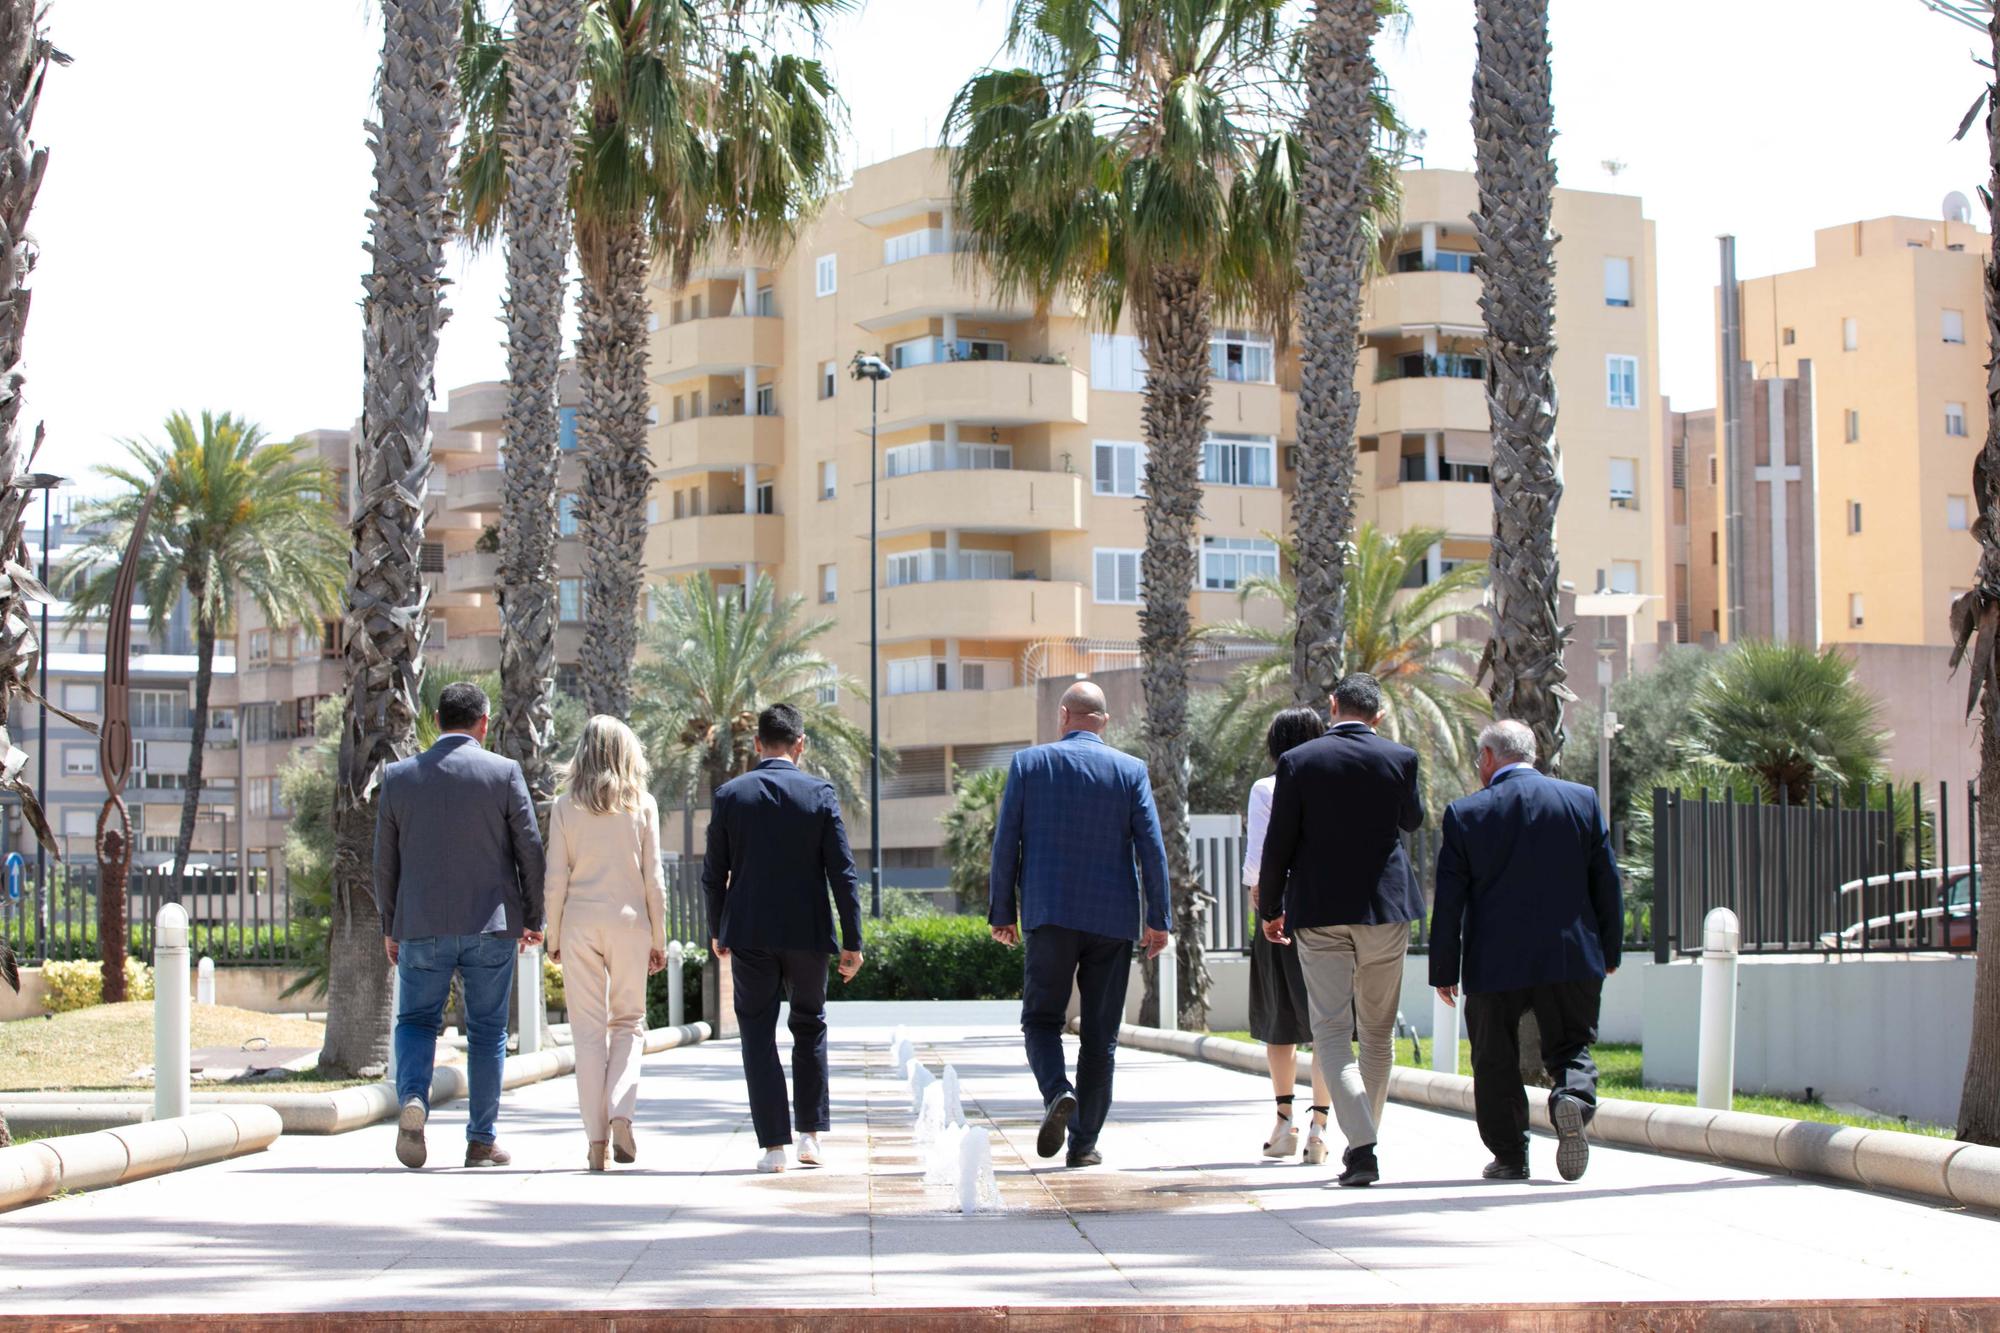 Todas las imágenes de la comida de los alcaldes y presidentes en Diario de Ibiza